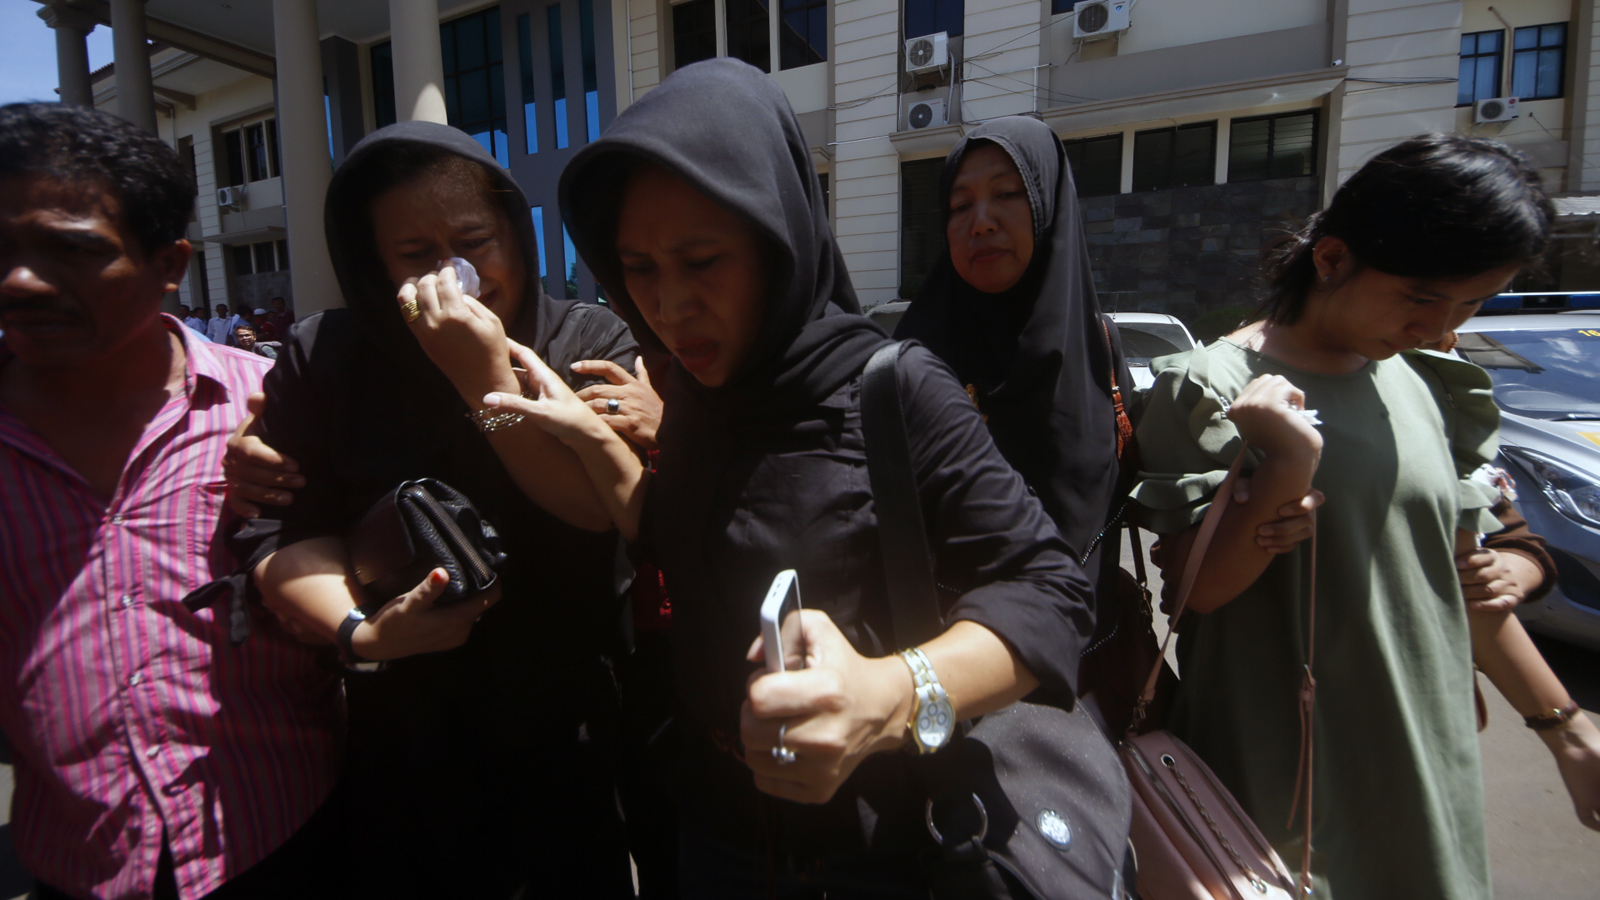 Umi Kalsum dan keluarganya menangis saat meninggalkan ruang sidang di Pengadilan Negeri Tanjungkarang. Umi Kalsum memilih bungkam saat awak media menanyakan pendapatnya atas vonis hukuman mati kepada terdakwa Medi Andika. (Lampungnews/El Shinta)